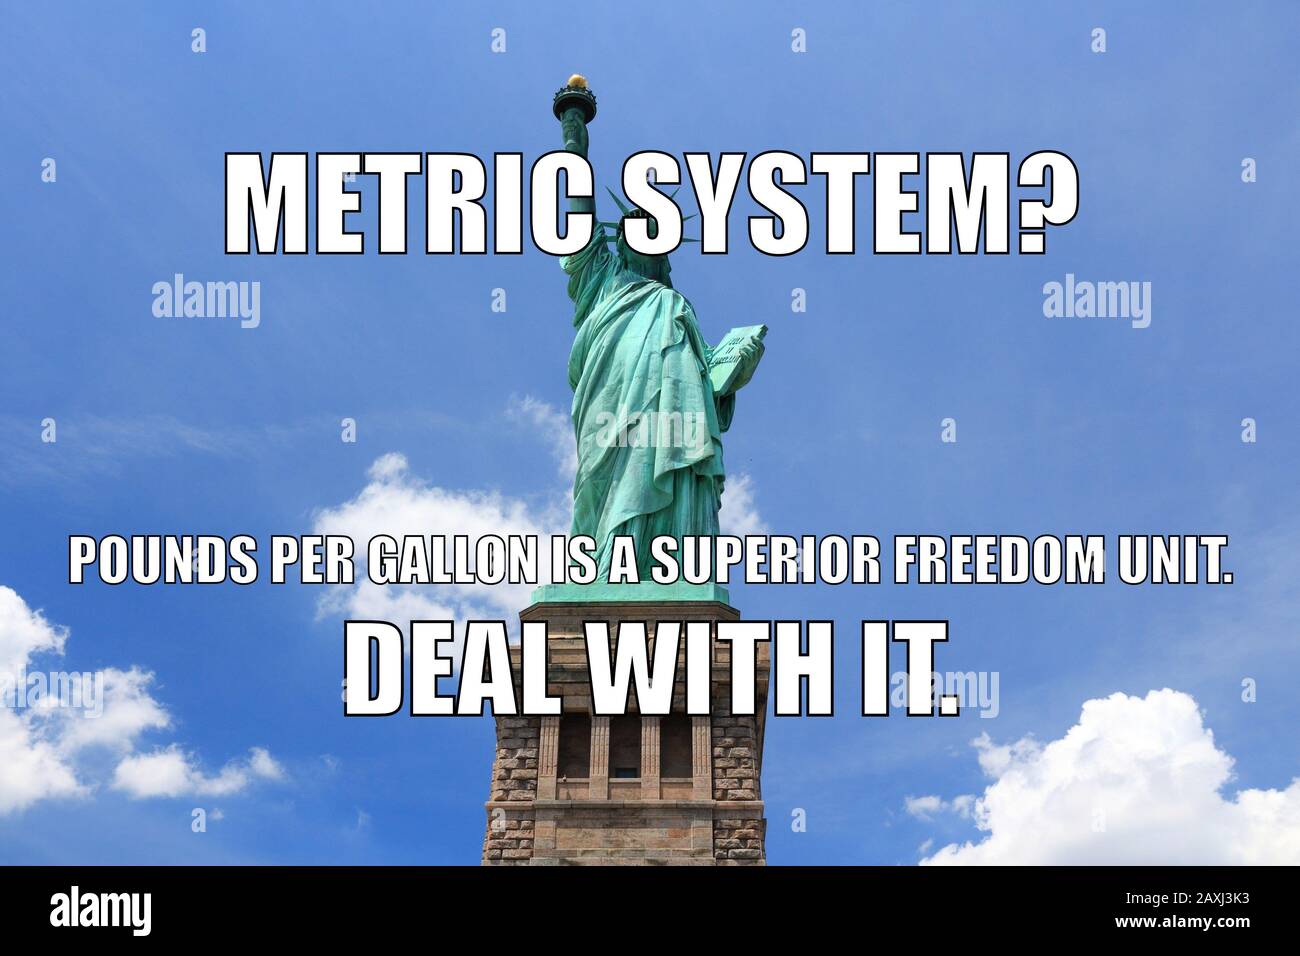 America funny meme for social media sharing. USA vs metric system humor  Stock Photo - Alamy